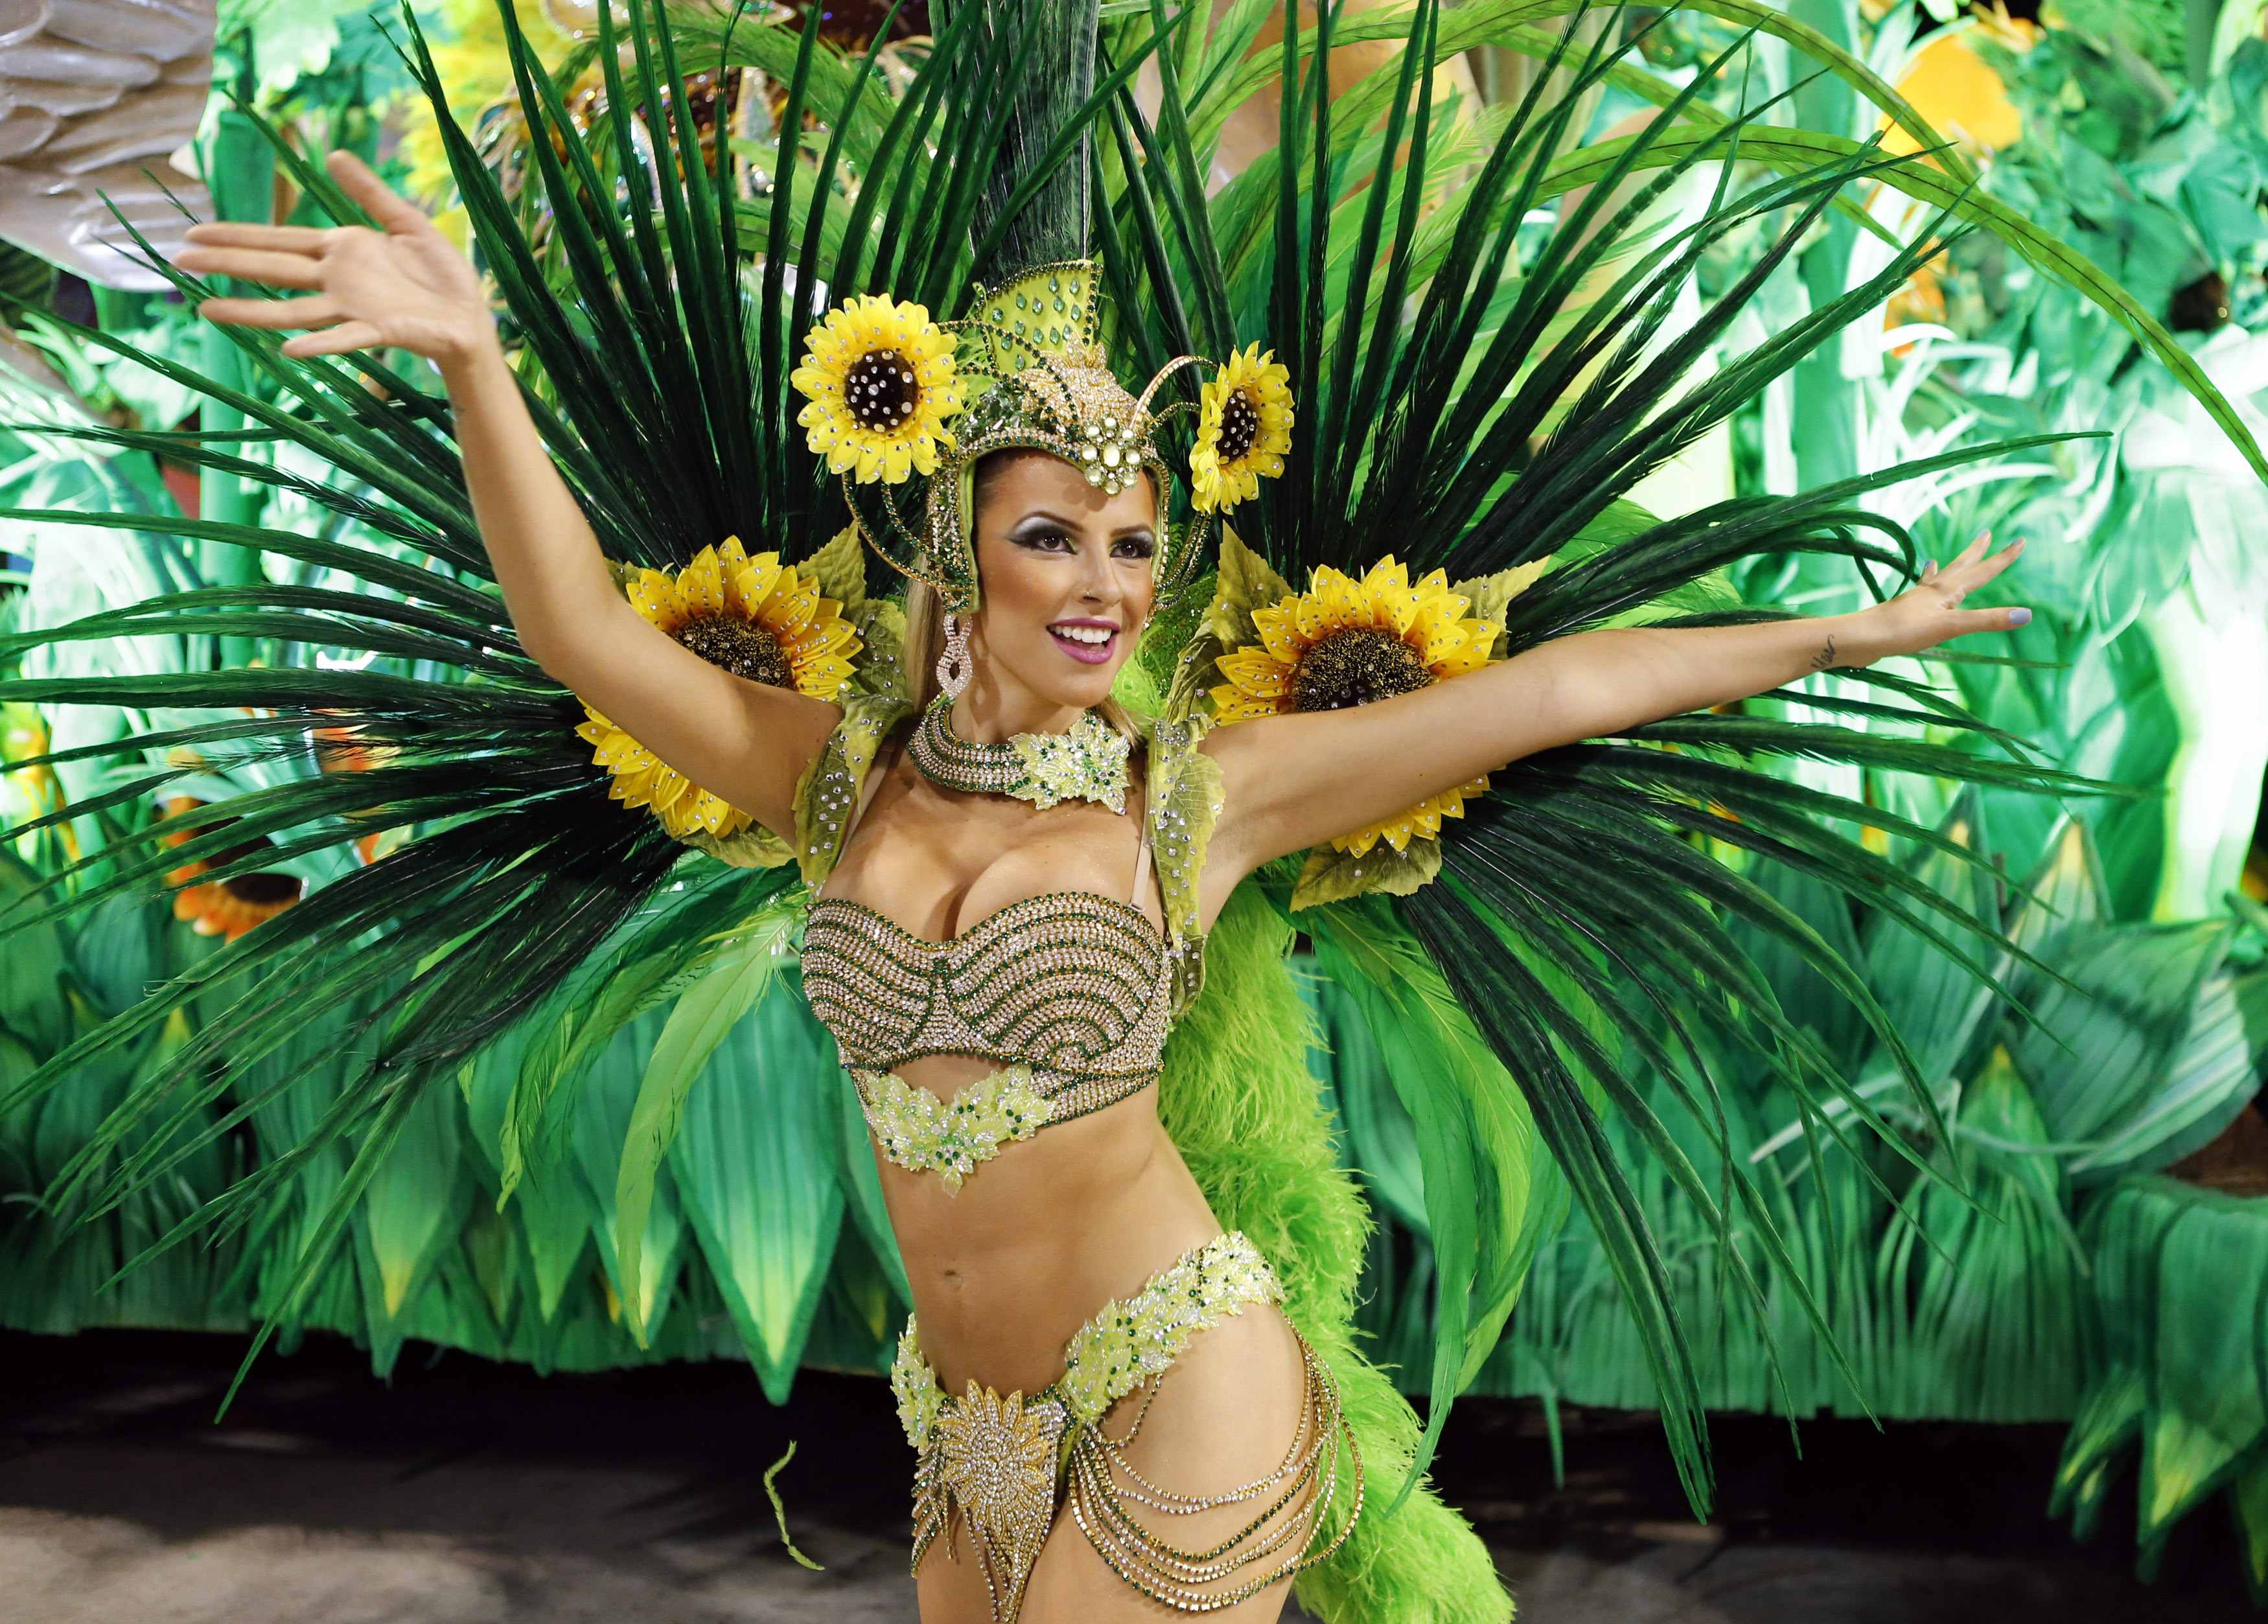 Brasil distribuye más de 100 millones de preservativos por carnaval